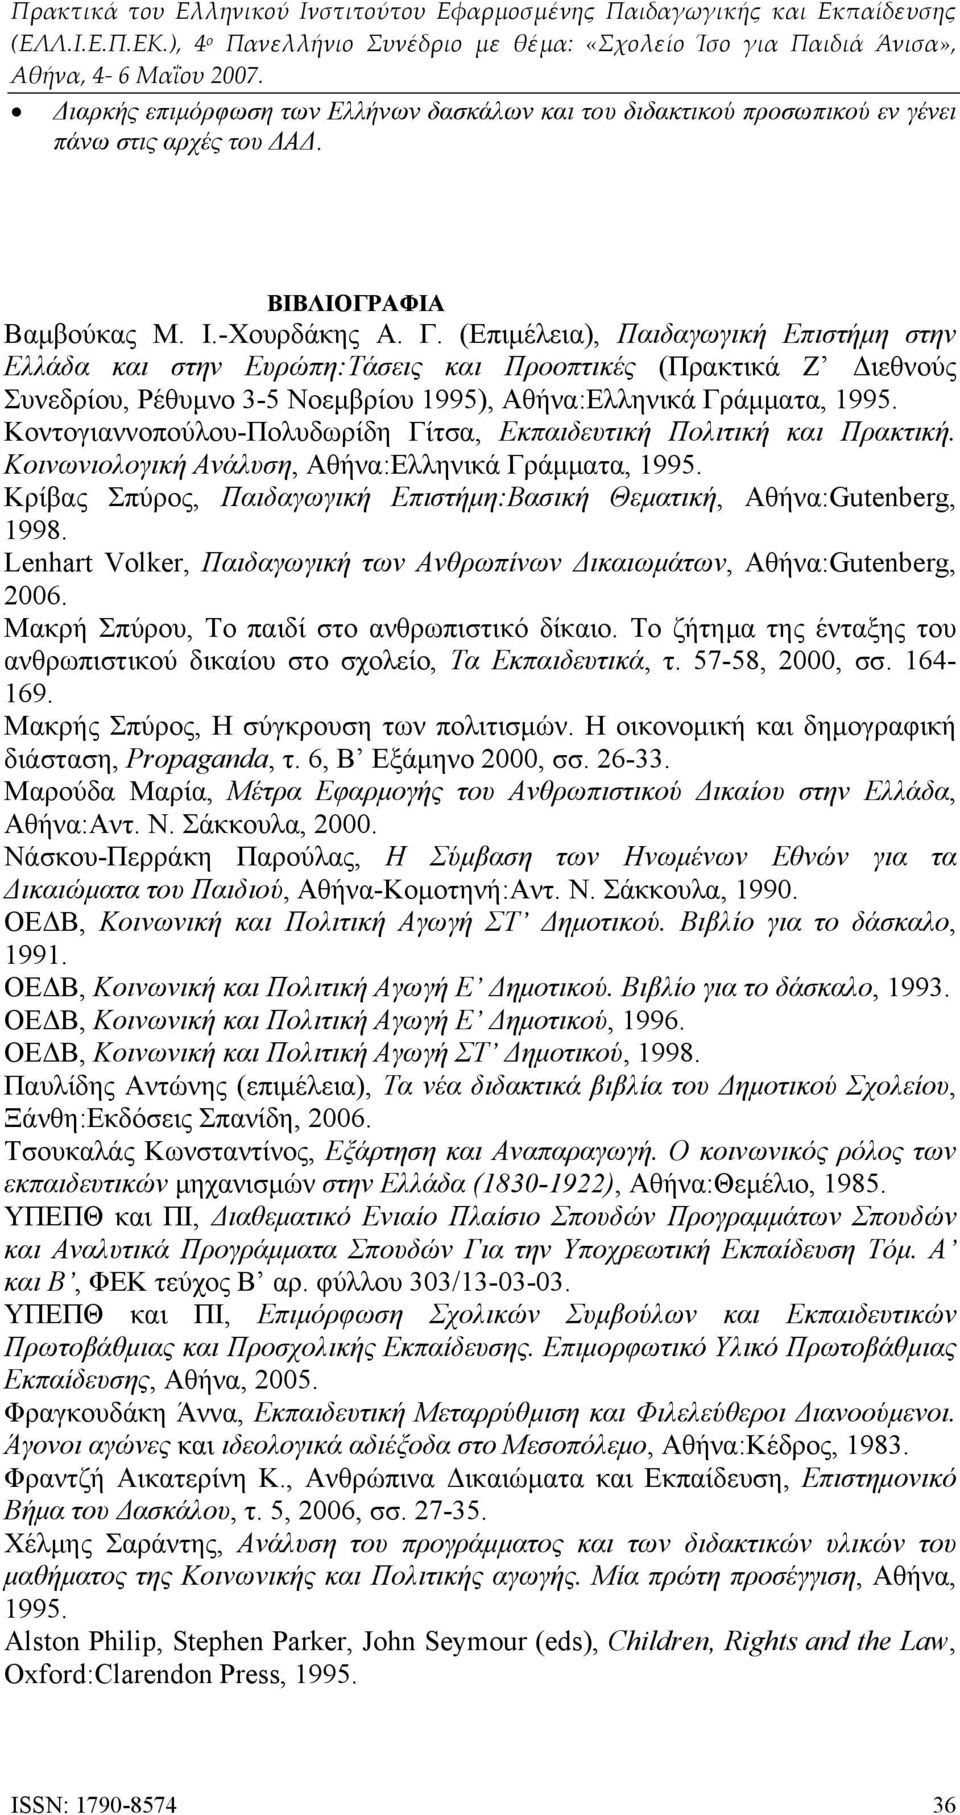 Κοντογιαννοπούλου-Πολυδωρίδη Γίτσα, Εκπαιδευτική Πολιτική και Πρακτική. Κοινωνιολογική Ανάλυση, Αθήνα:Ελληνικά Γράμματα, 1995.